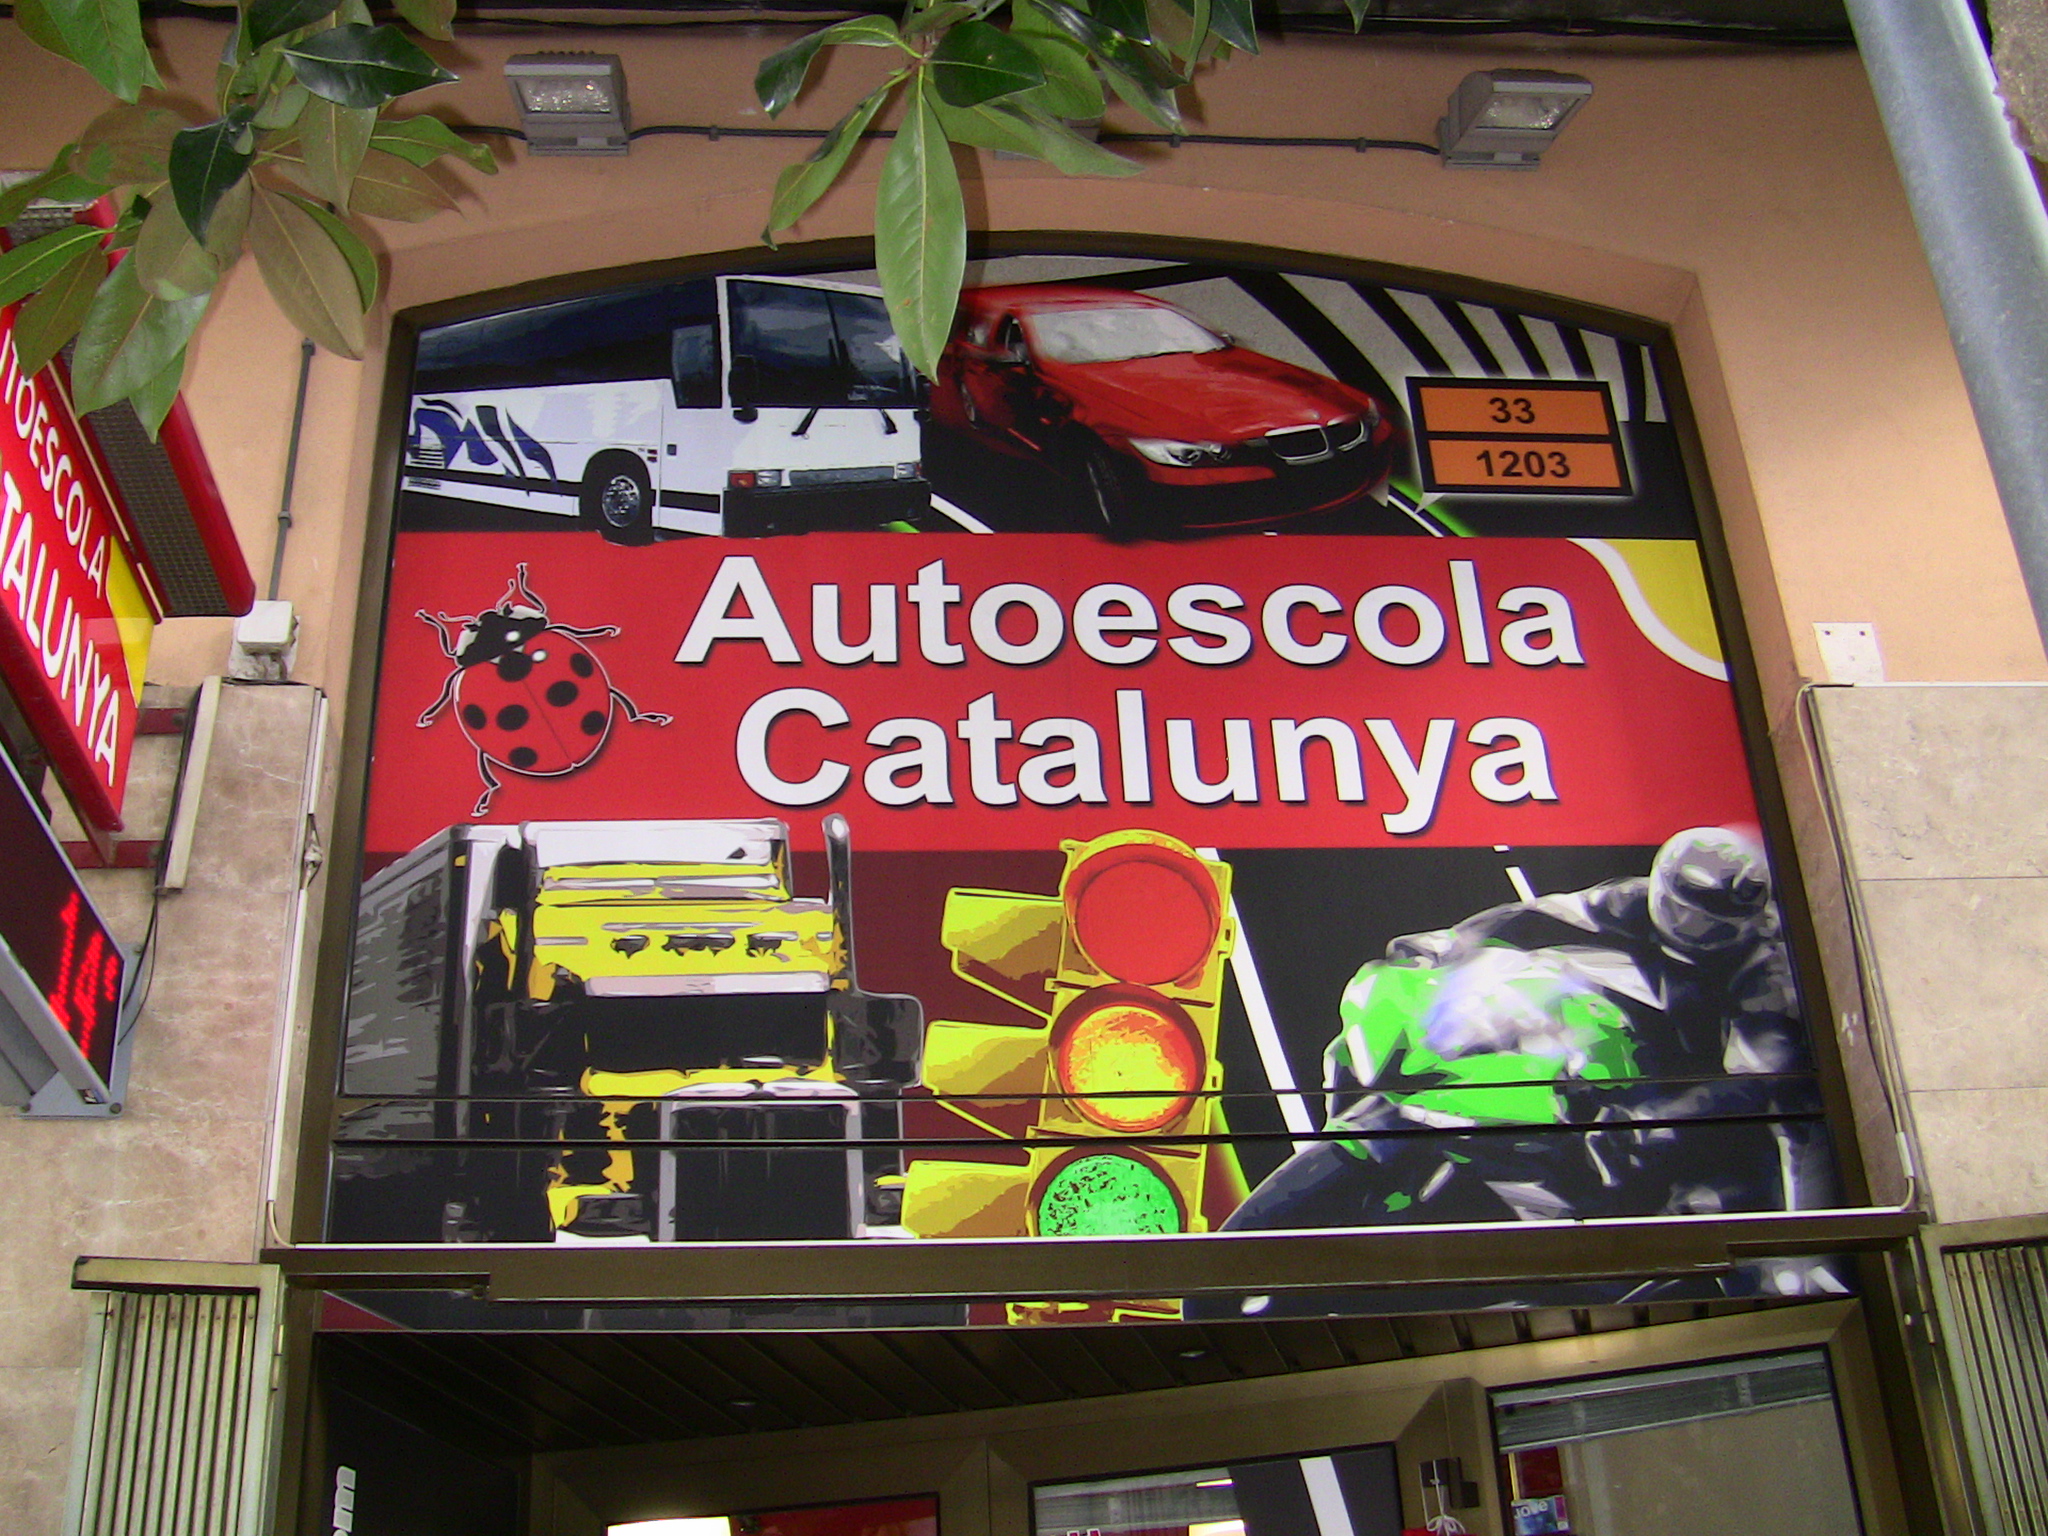 Autoescola Catalunya